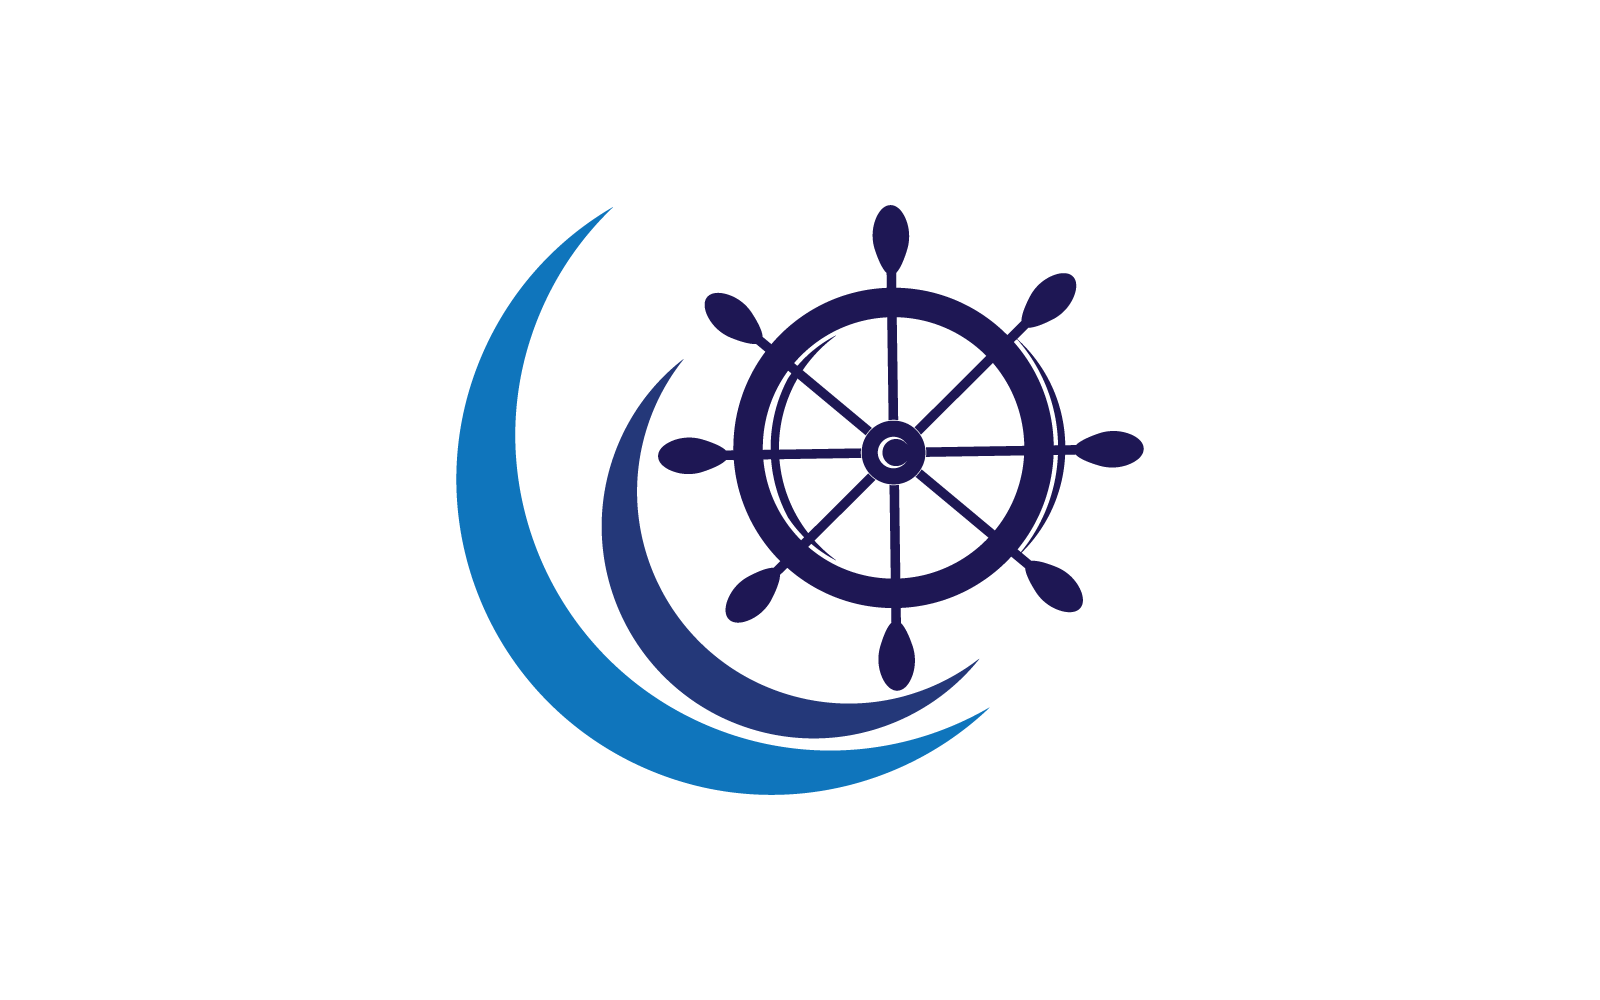 Ship wheel logo icon ilustration vector template